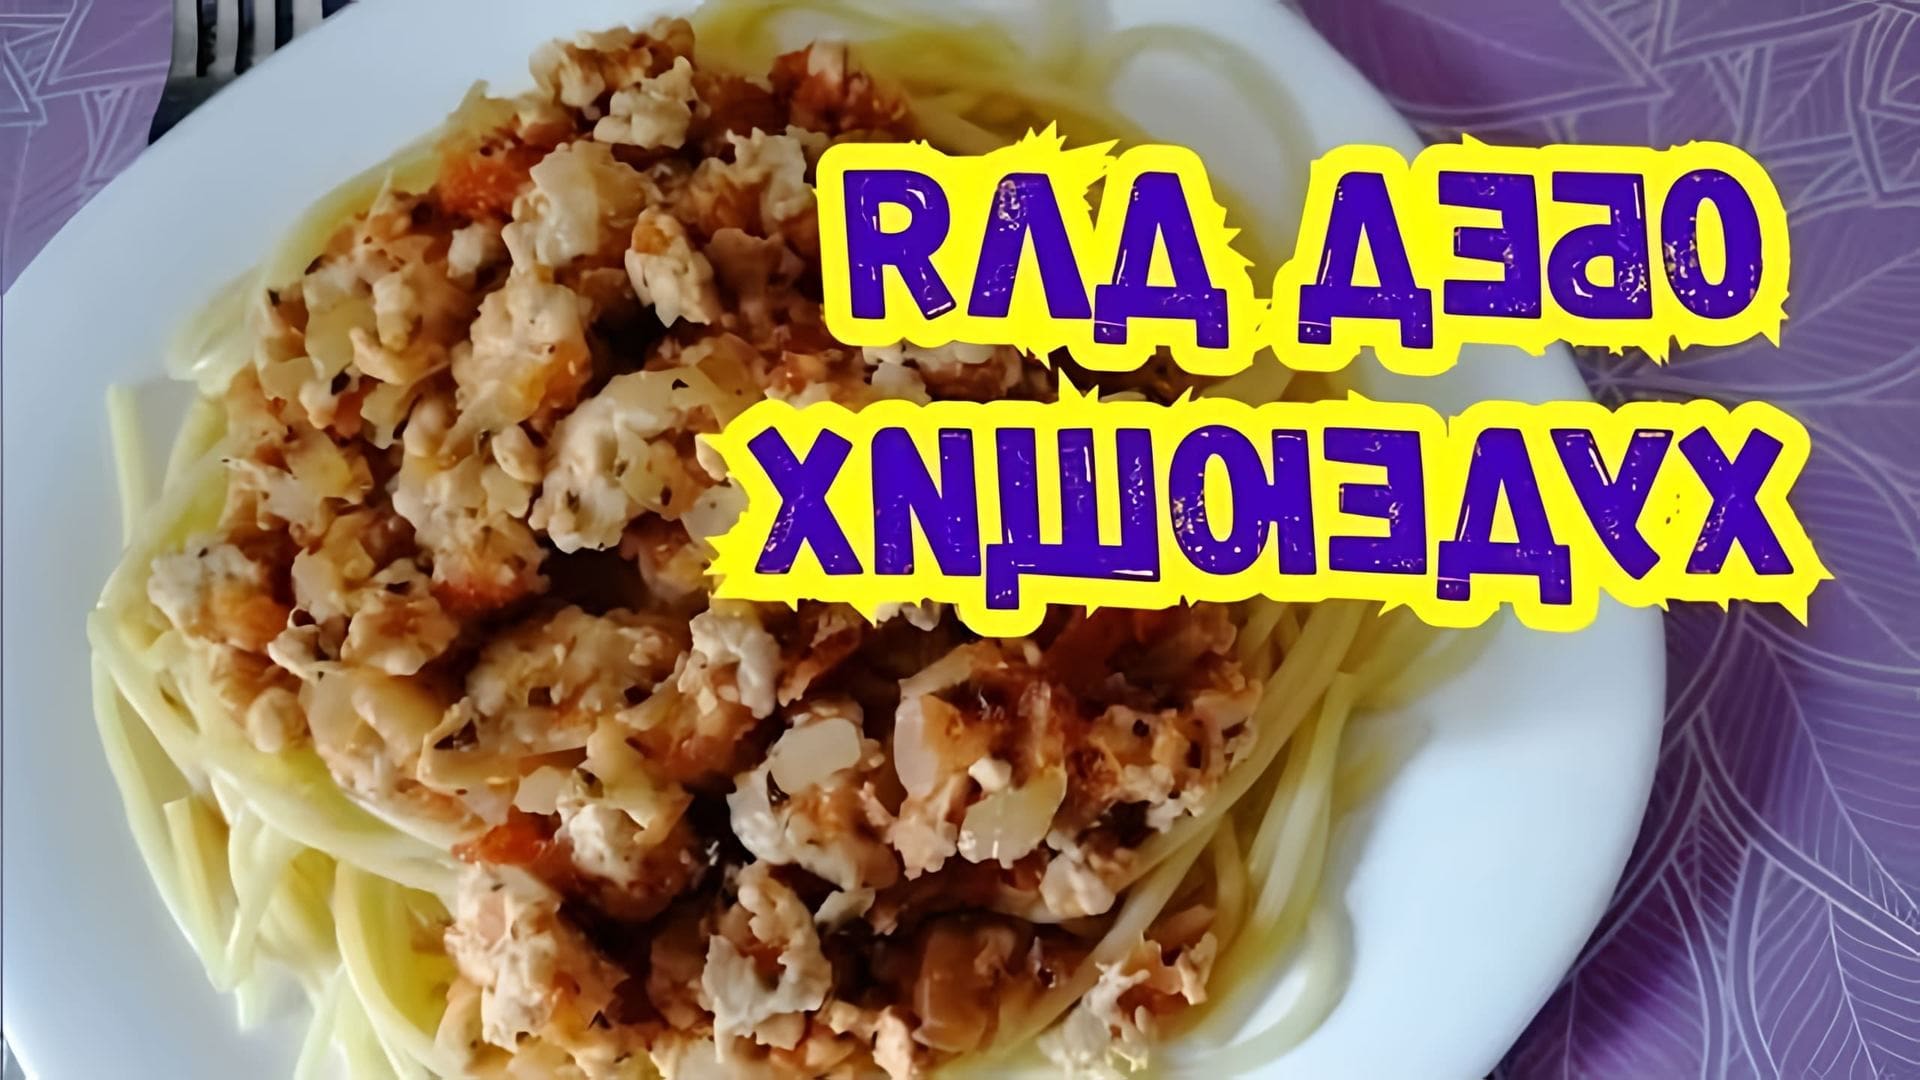 В этом видео демонстрируется рецепт приготовления спагетти болоньезе, который является одним из любимых обедов автора